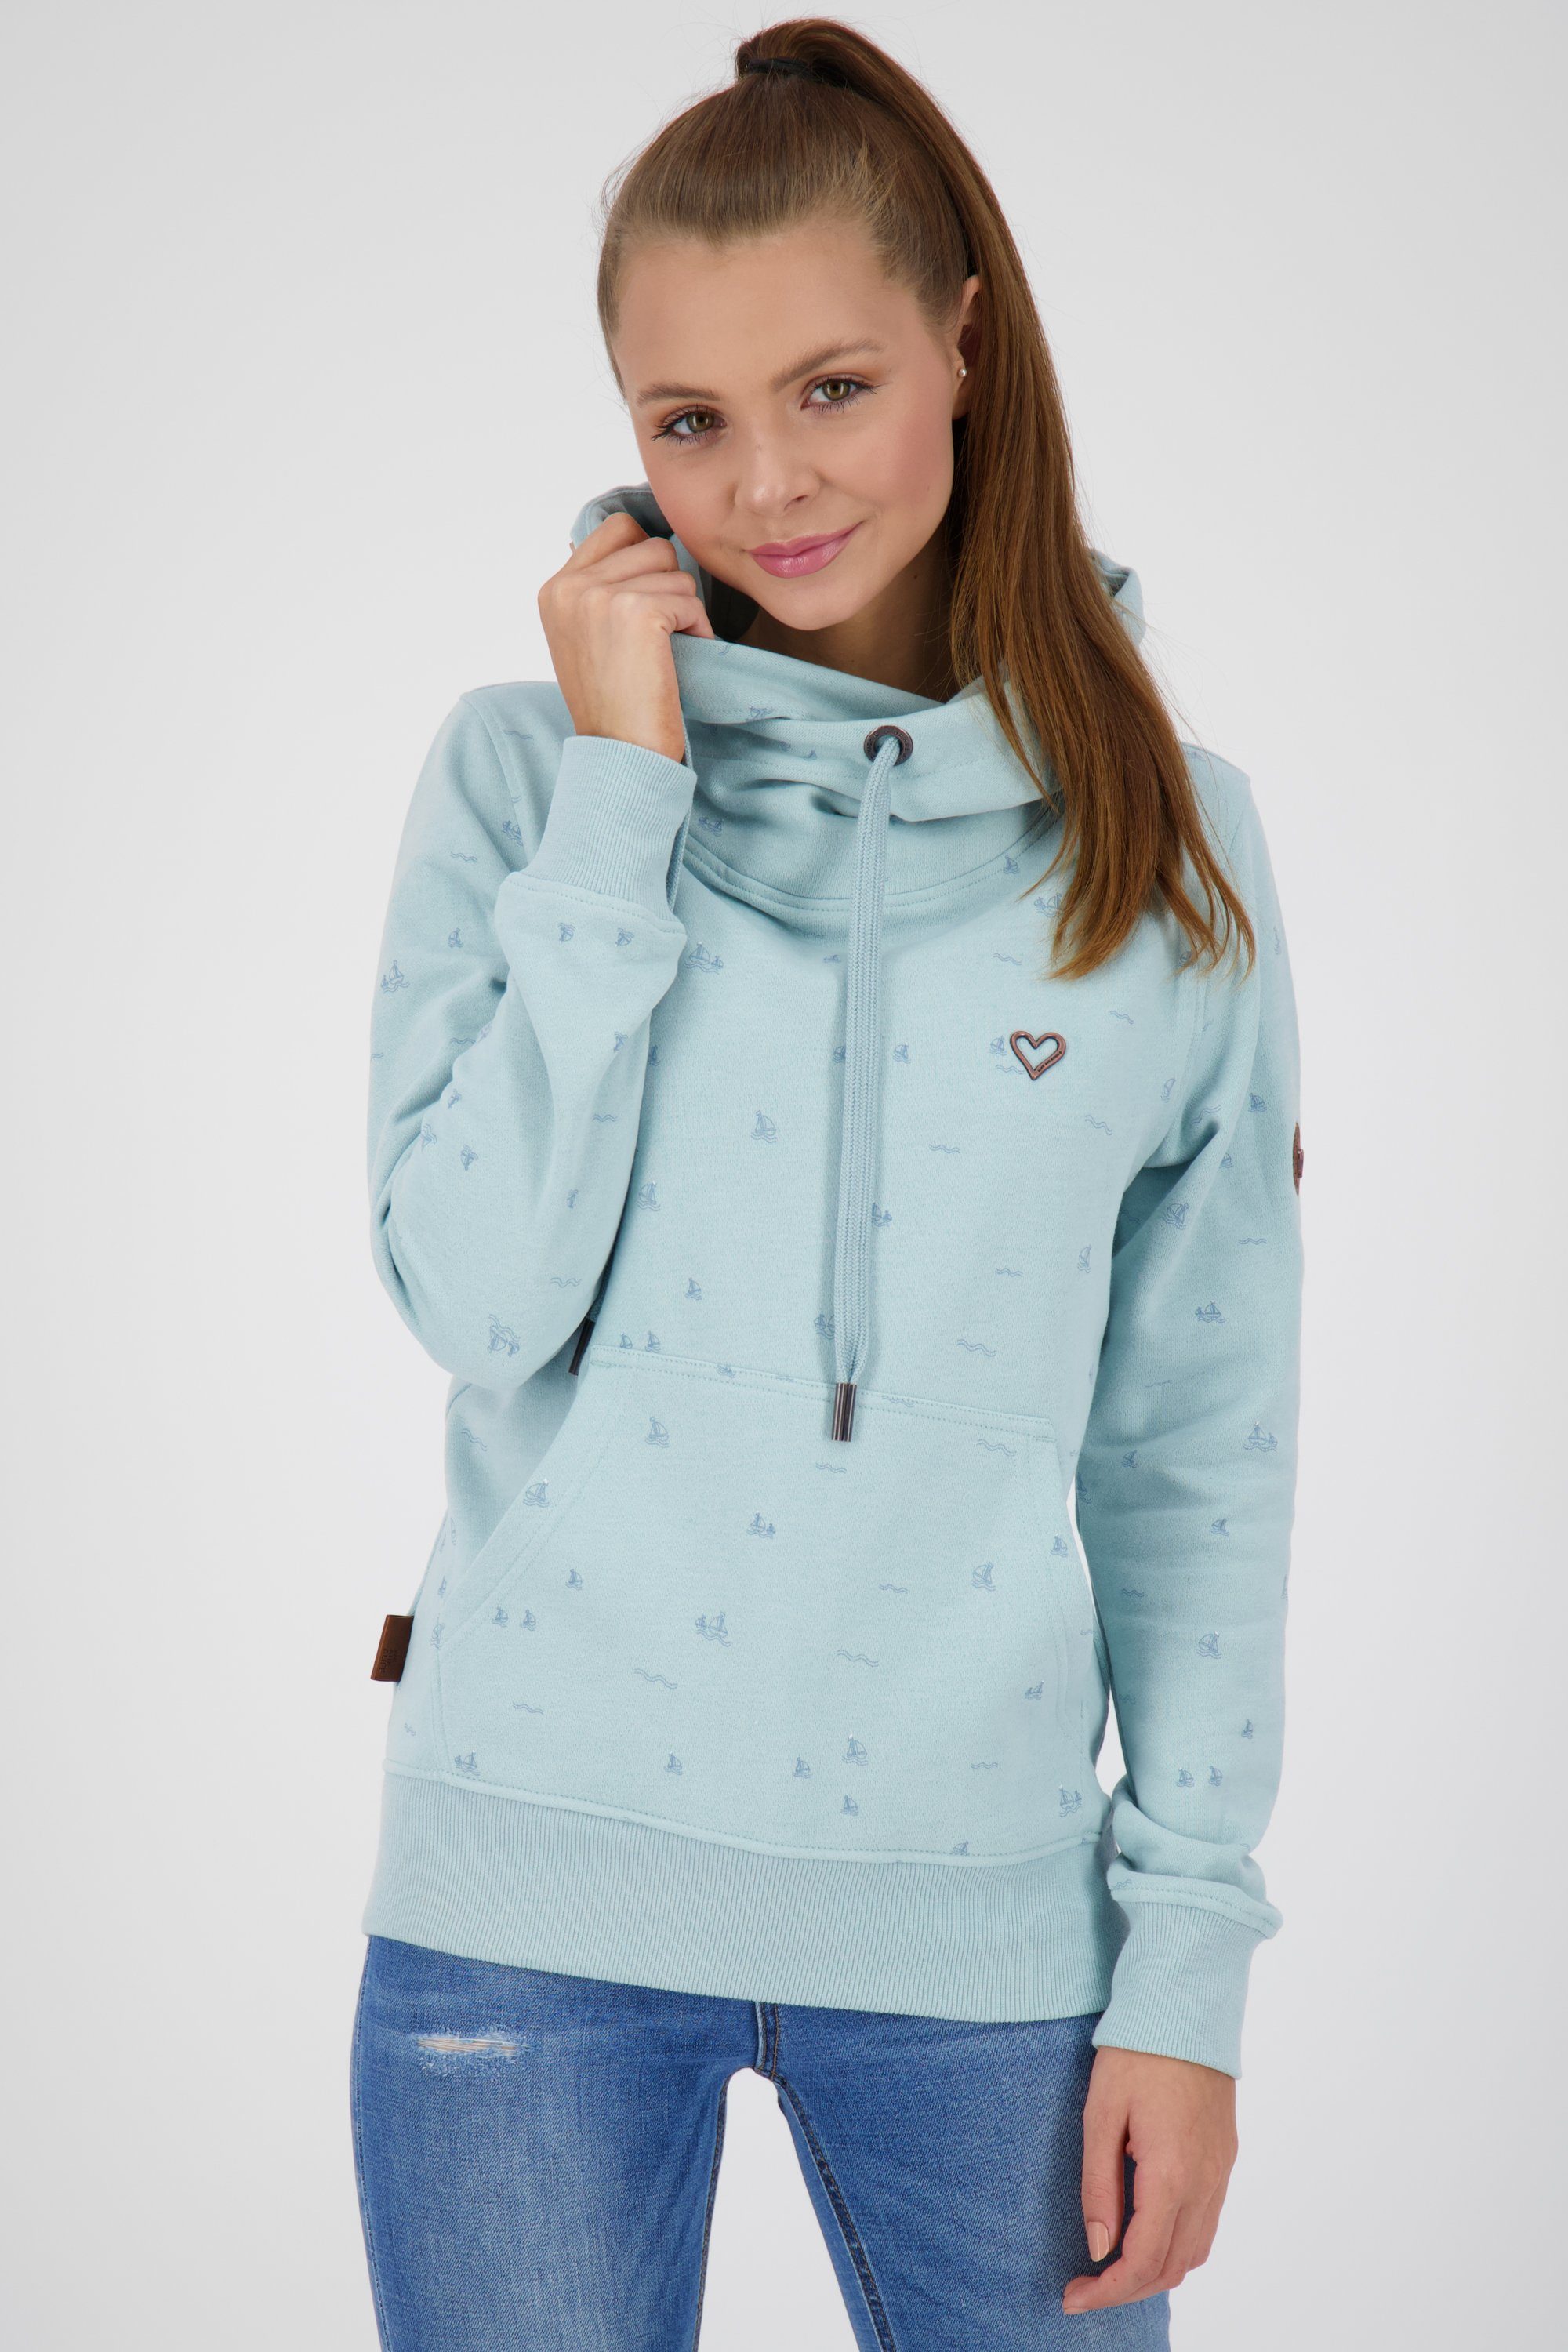 [Sehr beliebt, hohe Qualität] Alife & Kickin Kapuzensweatshirt Sweatshirt Kapuzensweatshirt, Damen SarahAK ice Sweatshirt B